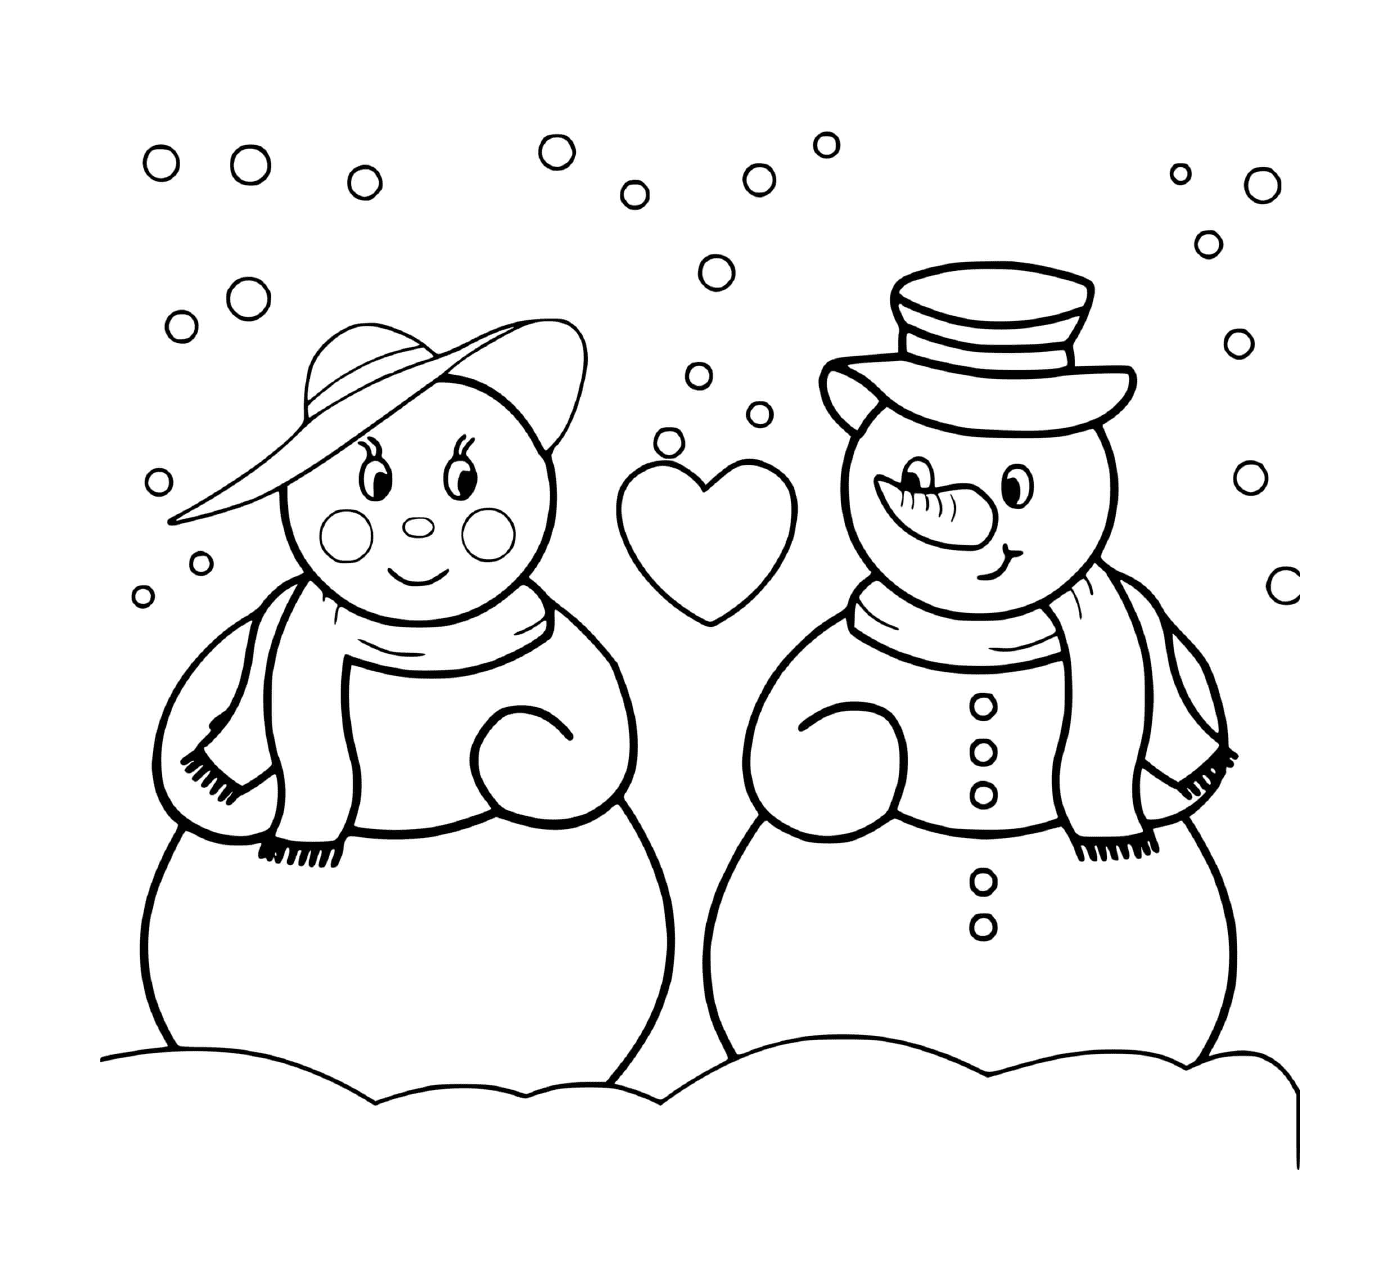  两个雪人相爱 